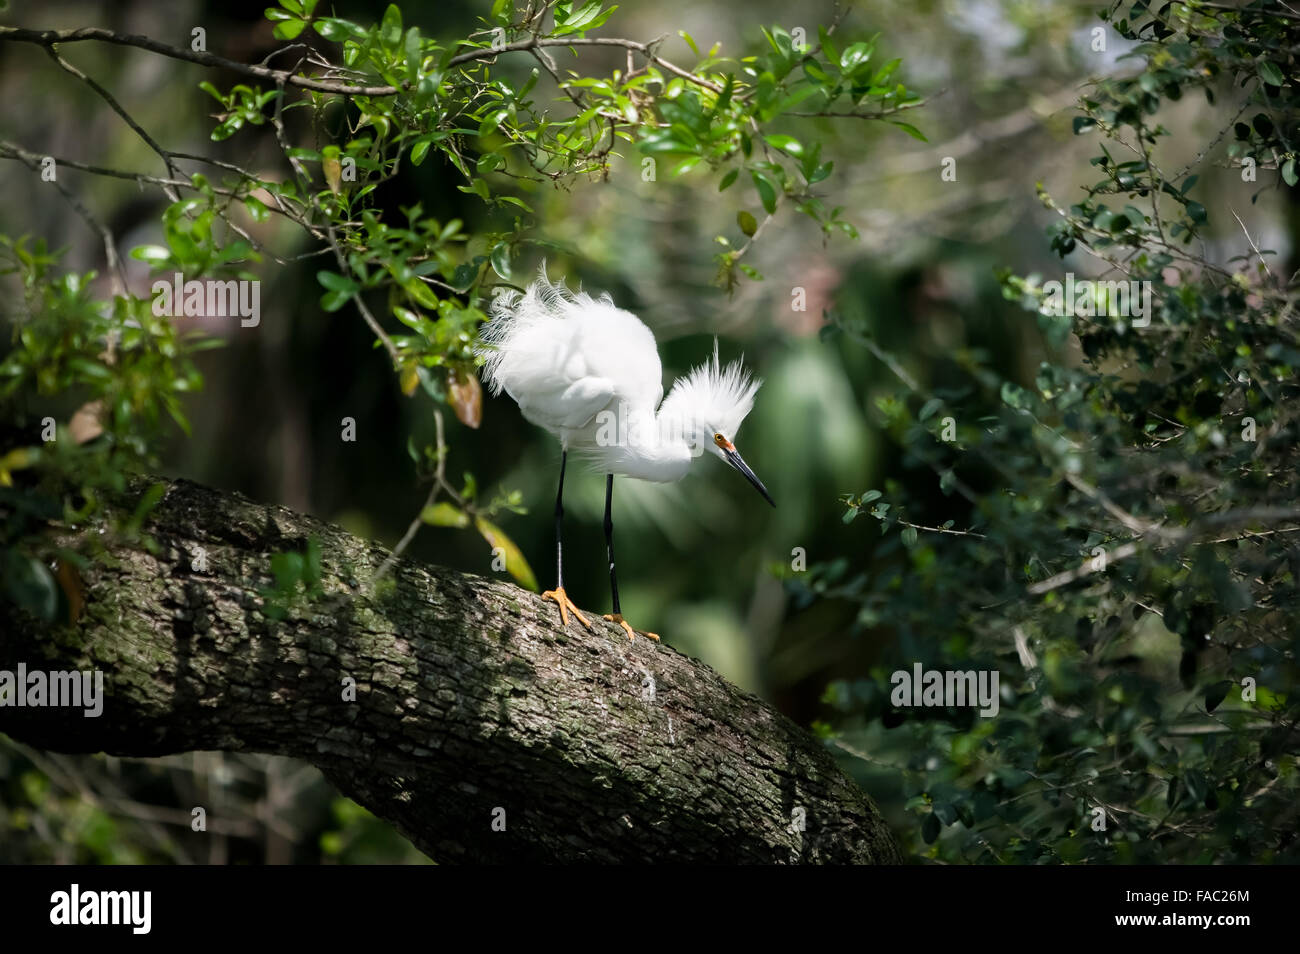 Vista laterale di un selvaggio Snowy Garzetta con piumaggio di allevamento in piedi su un Live Oak tree branch, Alligator Farm, sant Agostino in Florida, Stati Uniti d'America. Foto Stock